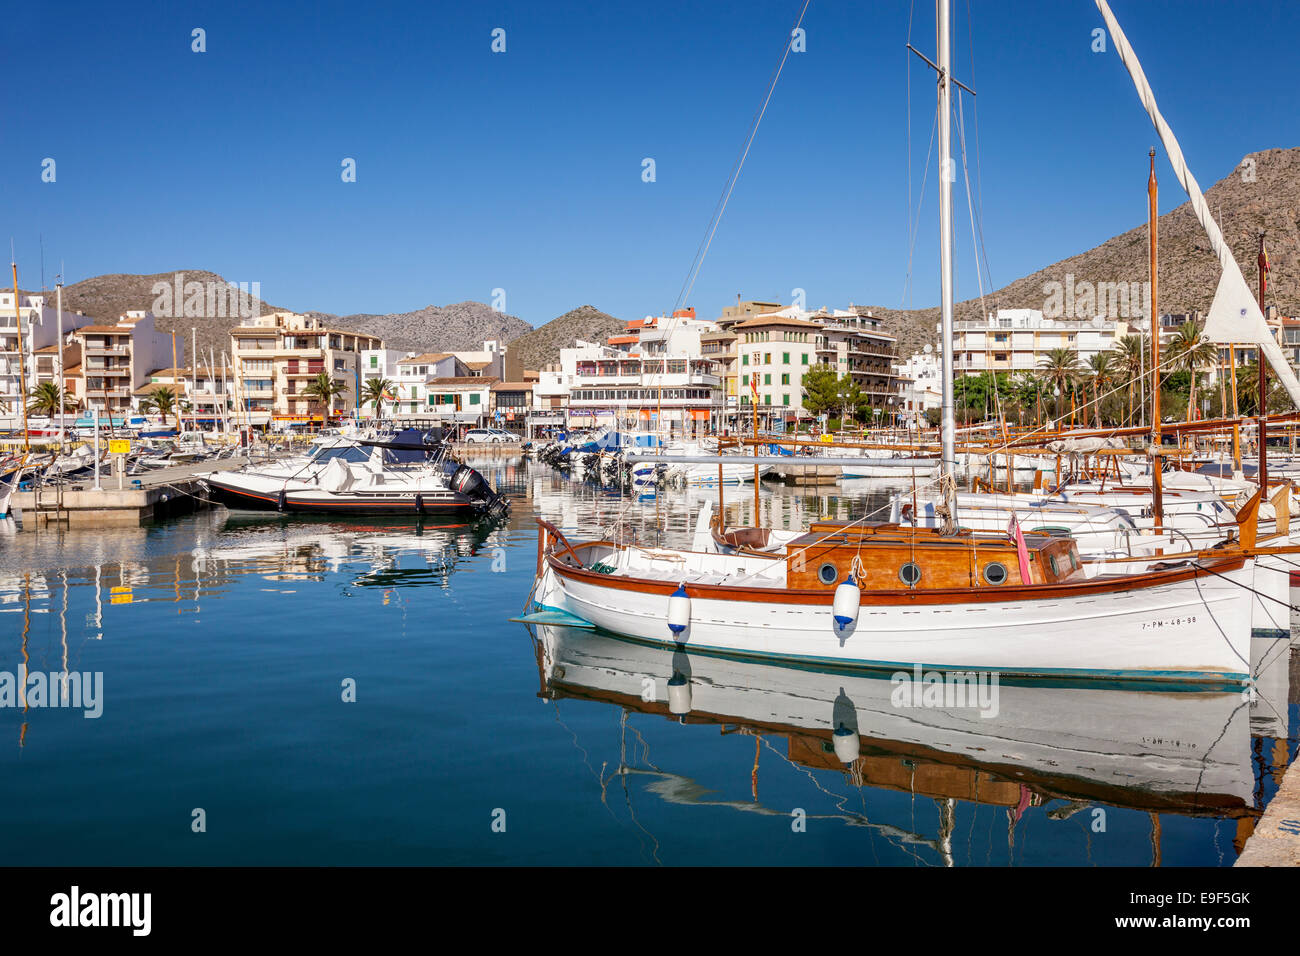 Der Hafen, Puerto de Pollensa, Mallorca - Spanien Stockfoto